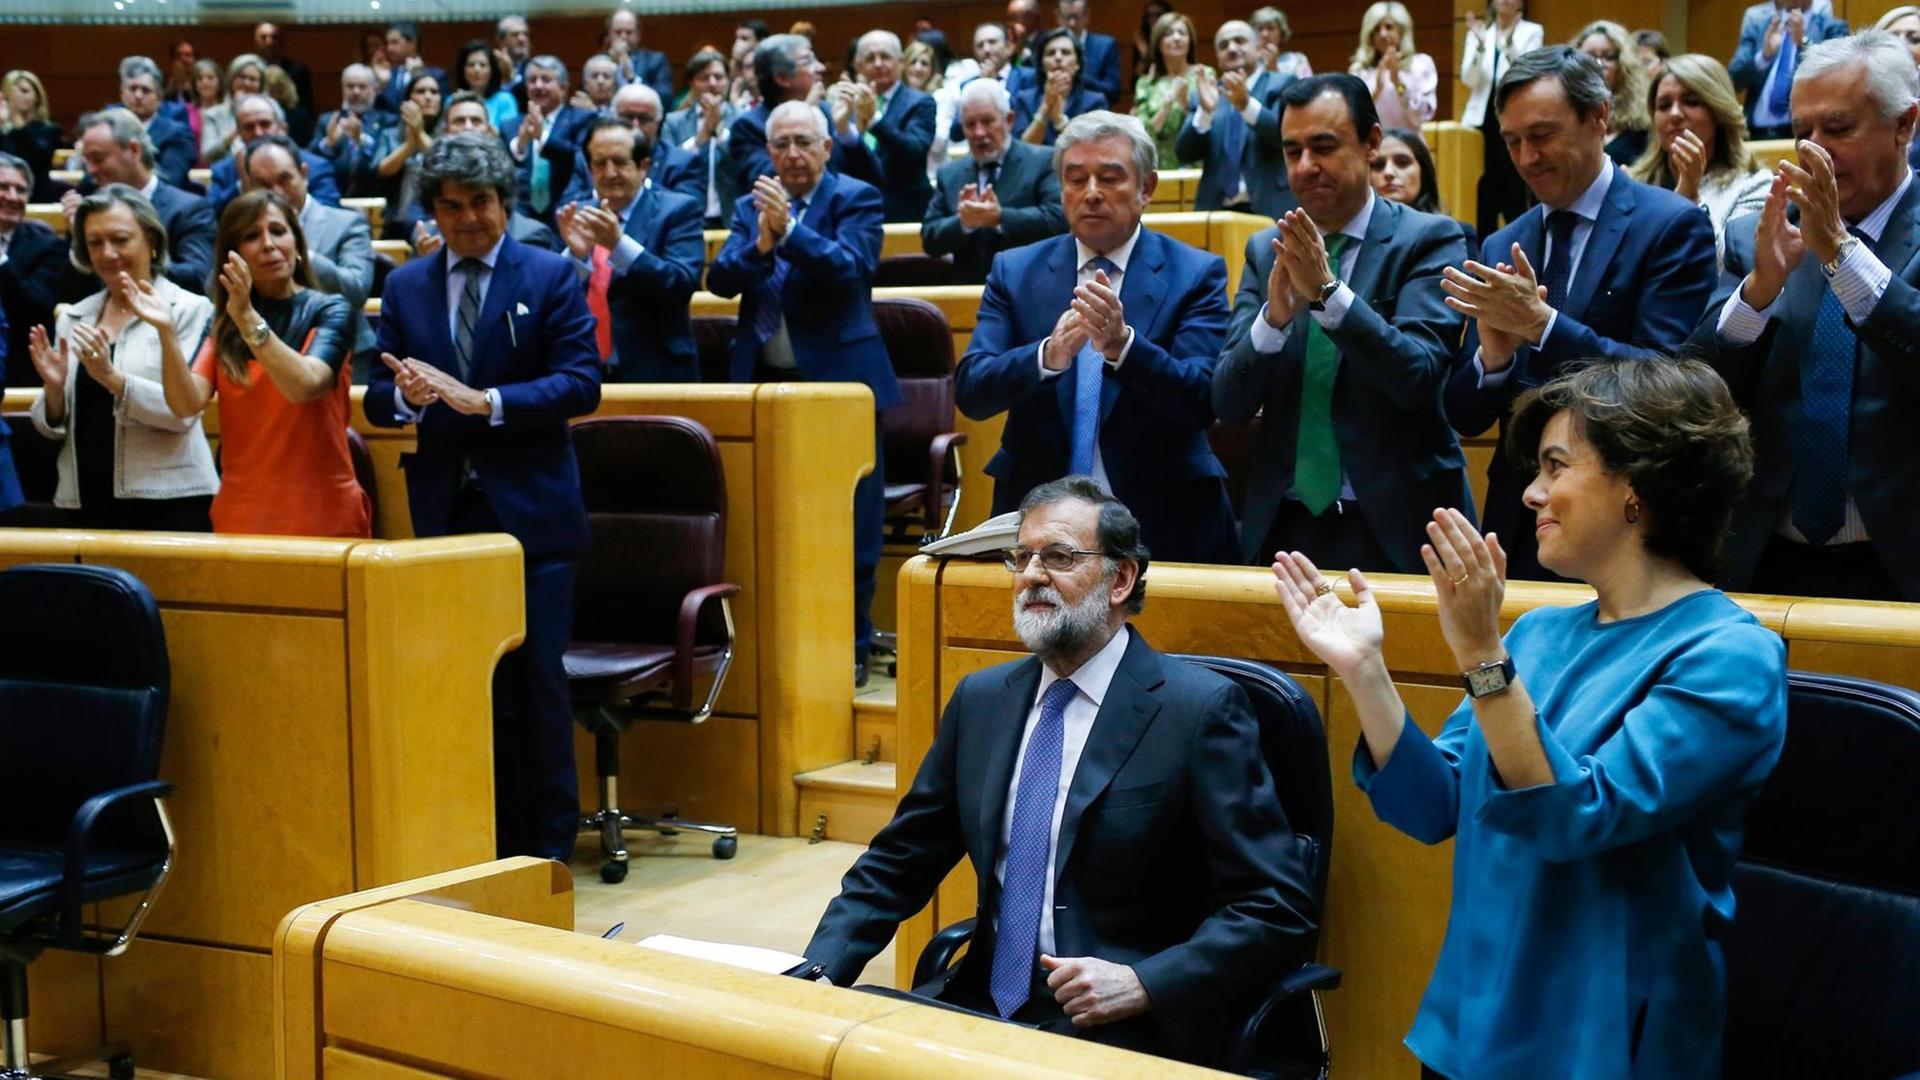 Applaus für den spanischen Ministerpräsident Mariano Rajoy während einer Sitzung des Senats zu Zwangsmaßnahmen gegen die katalanische Regierung.